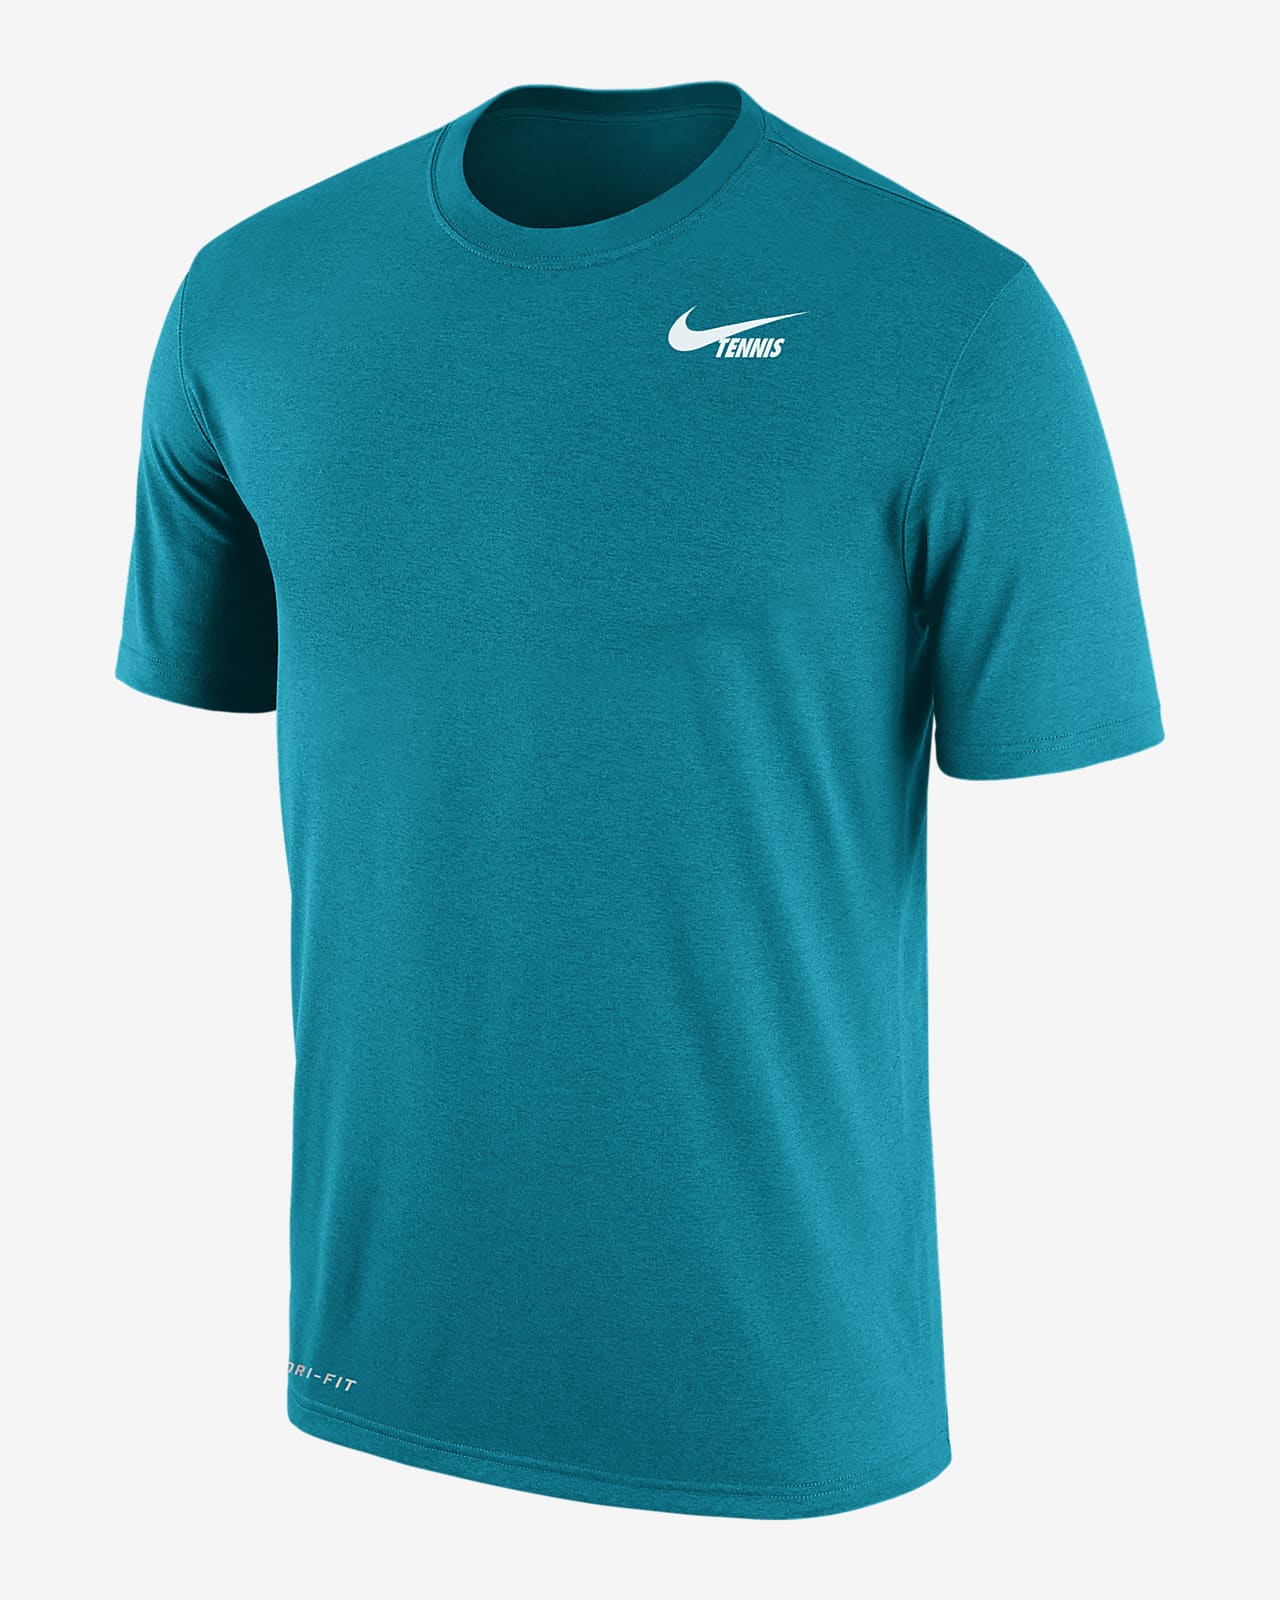 Nike, Shirts, Nike Usa Basketball Shirt Dri Fit Small